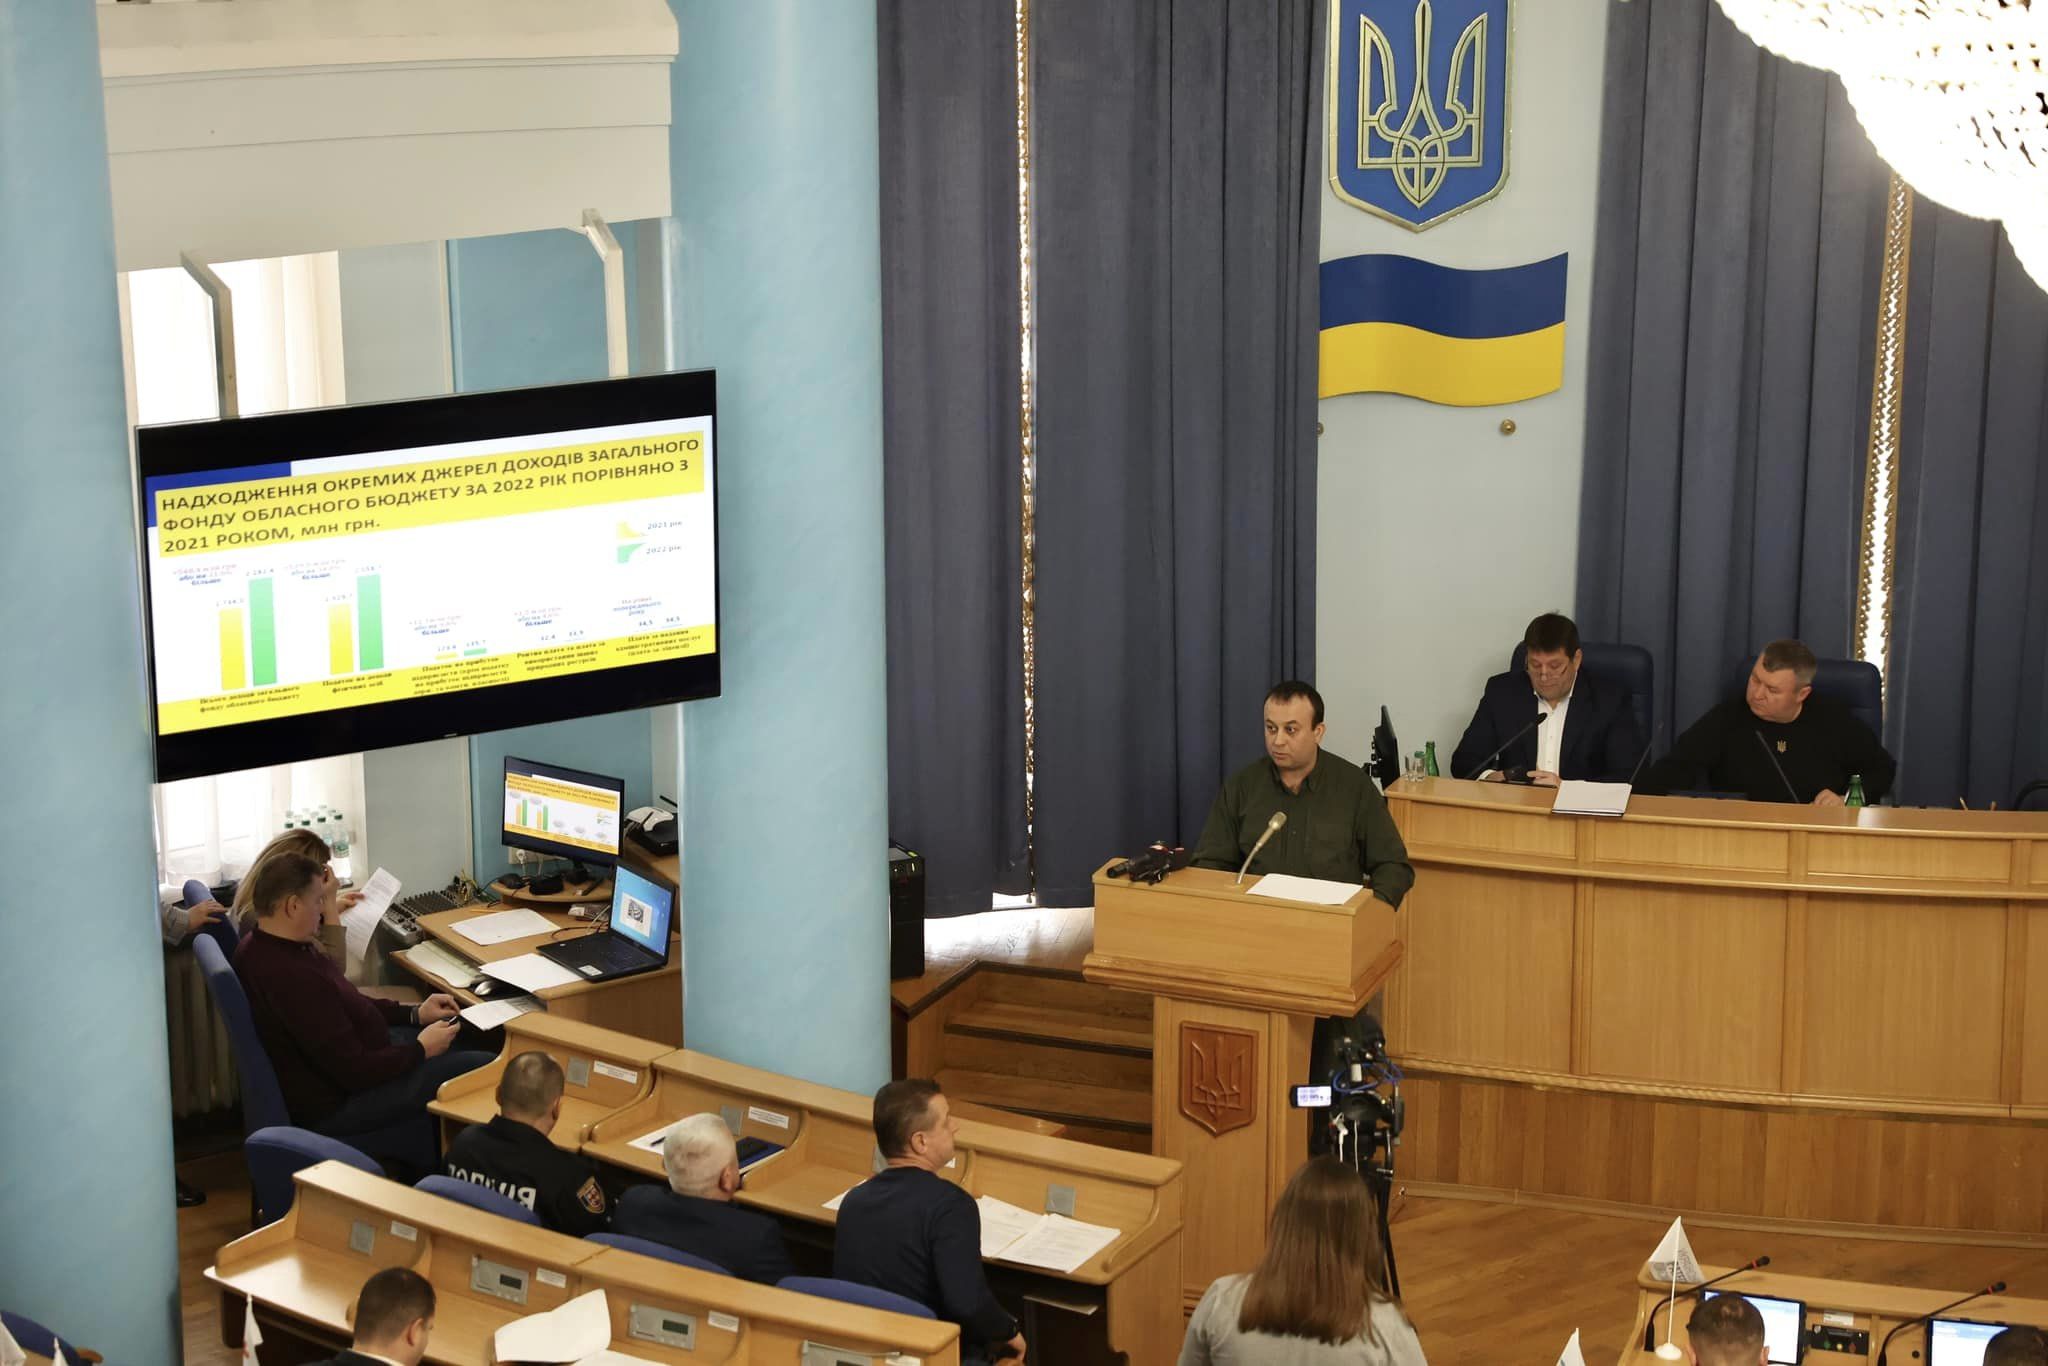 Сергій Борзов презентував звіт про роботу обласної військової адміністрації за ІІ півріччя 2022 року та І півріччя 2023-го